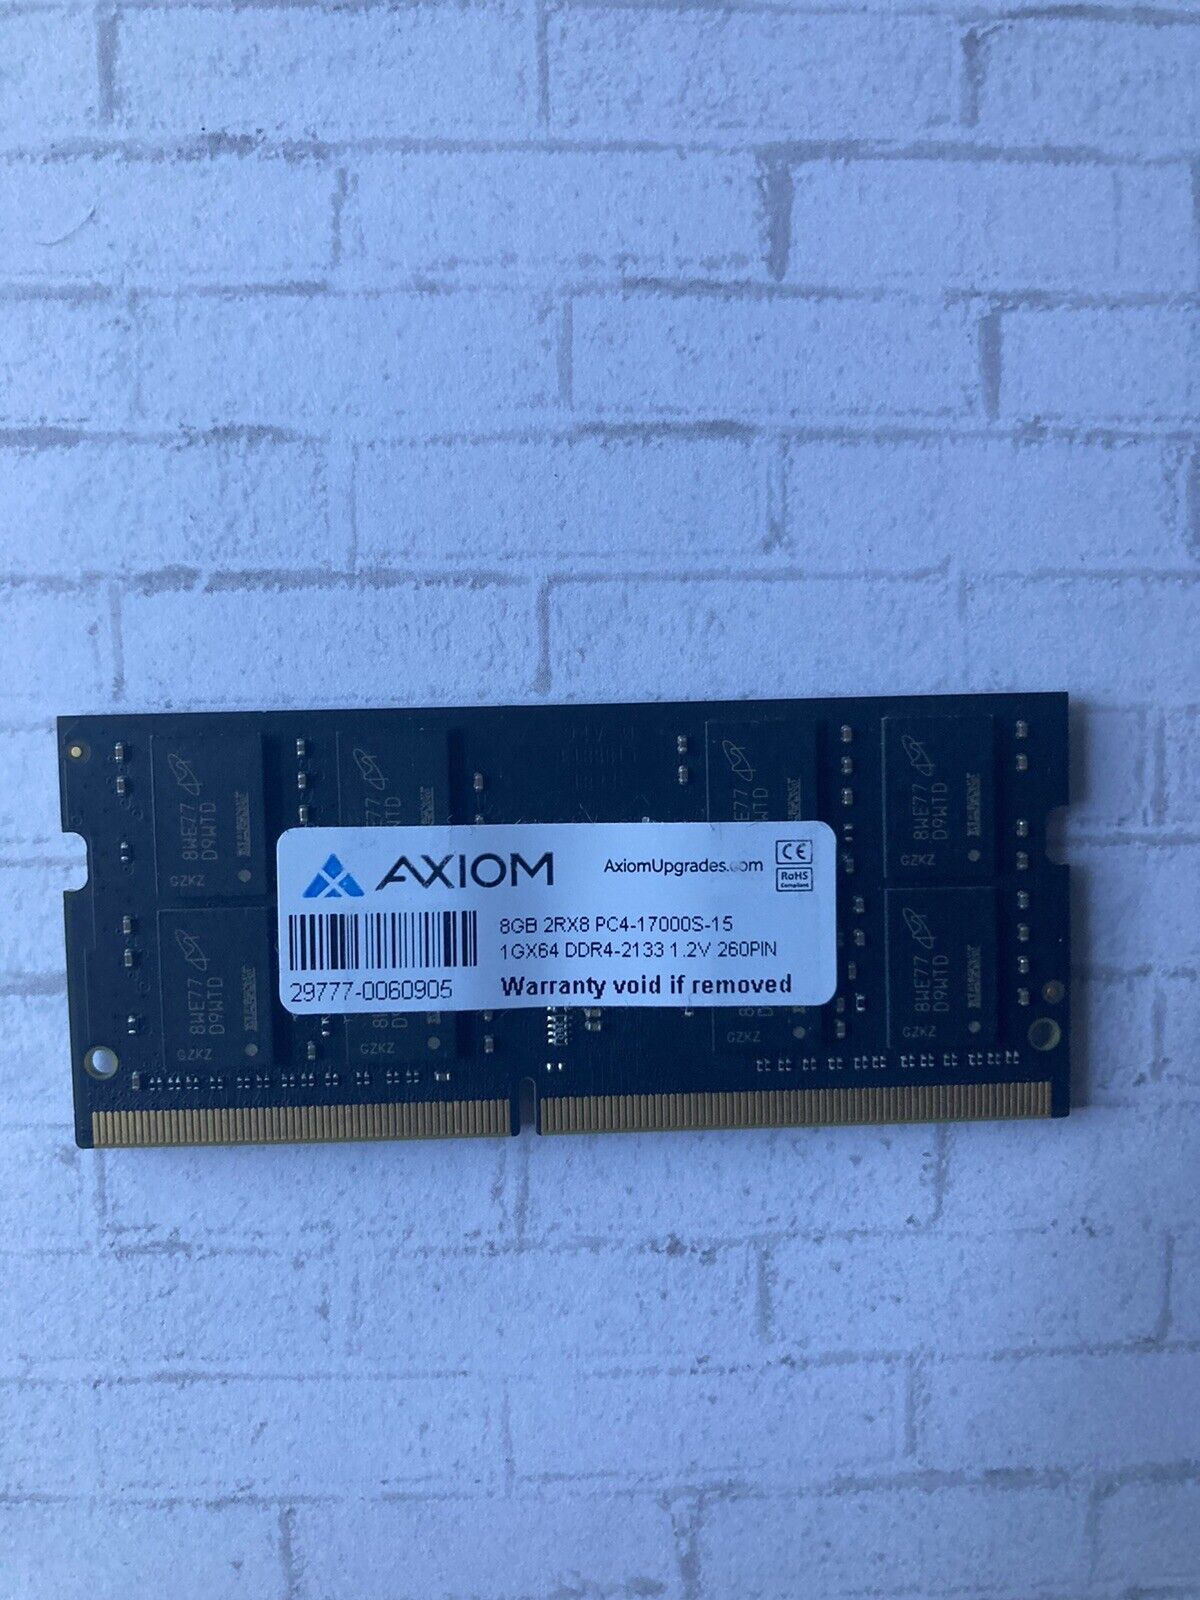 Axiom 8GB Ram pc4-17000 DDR4-2133